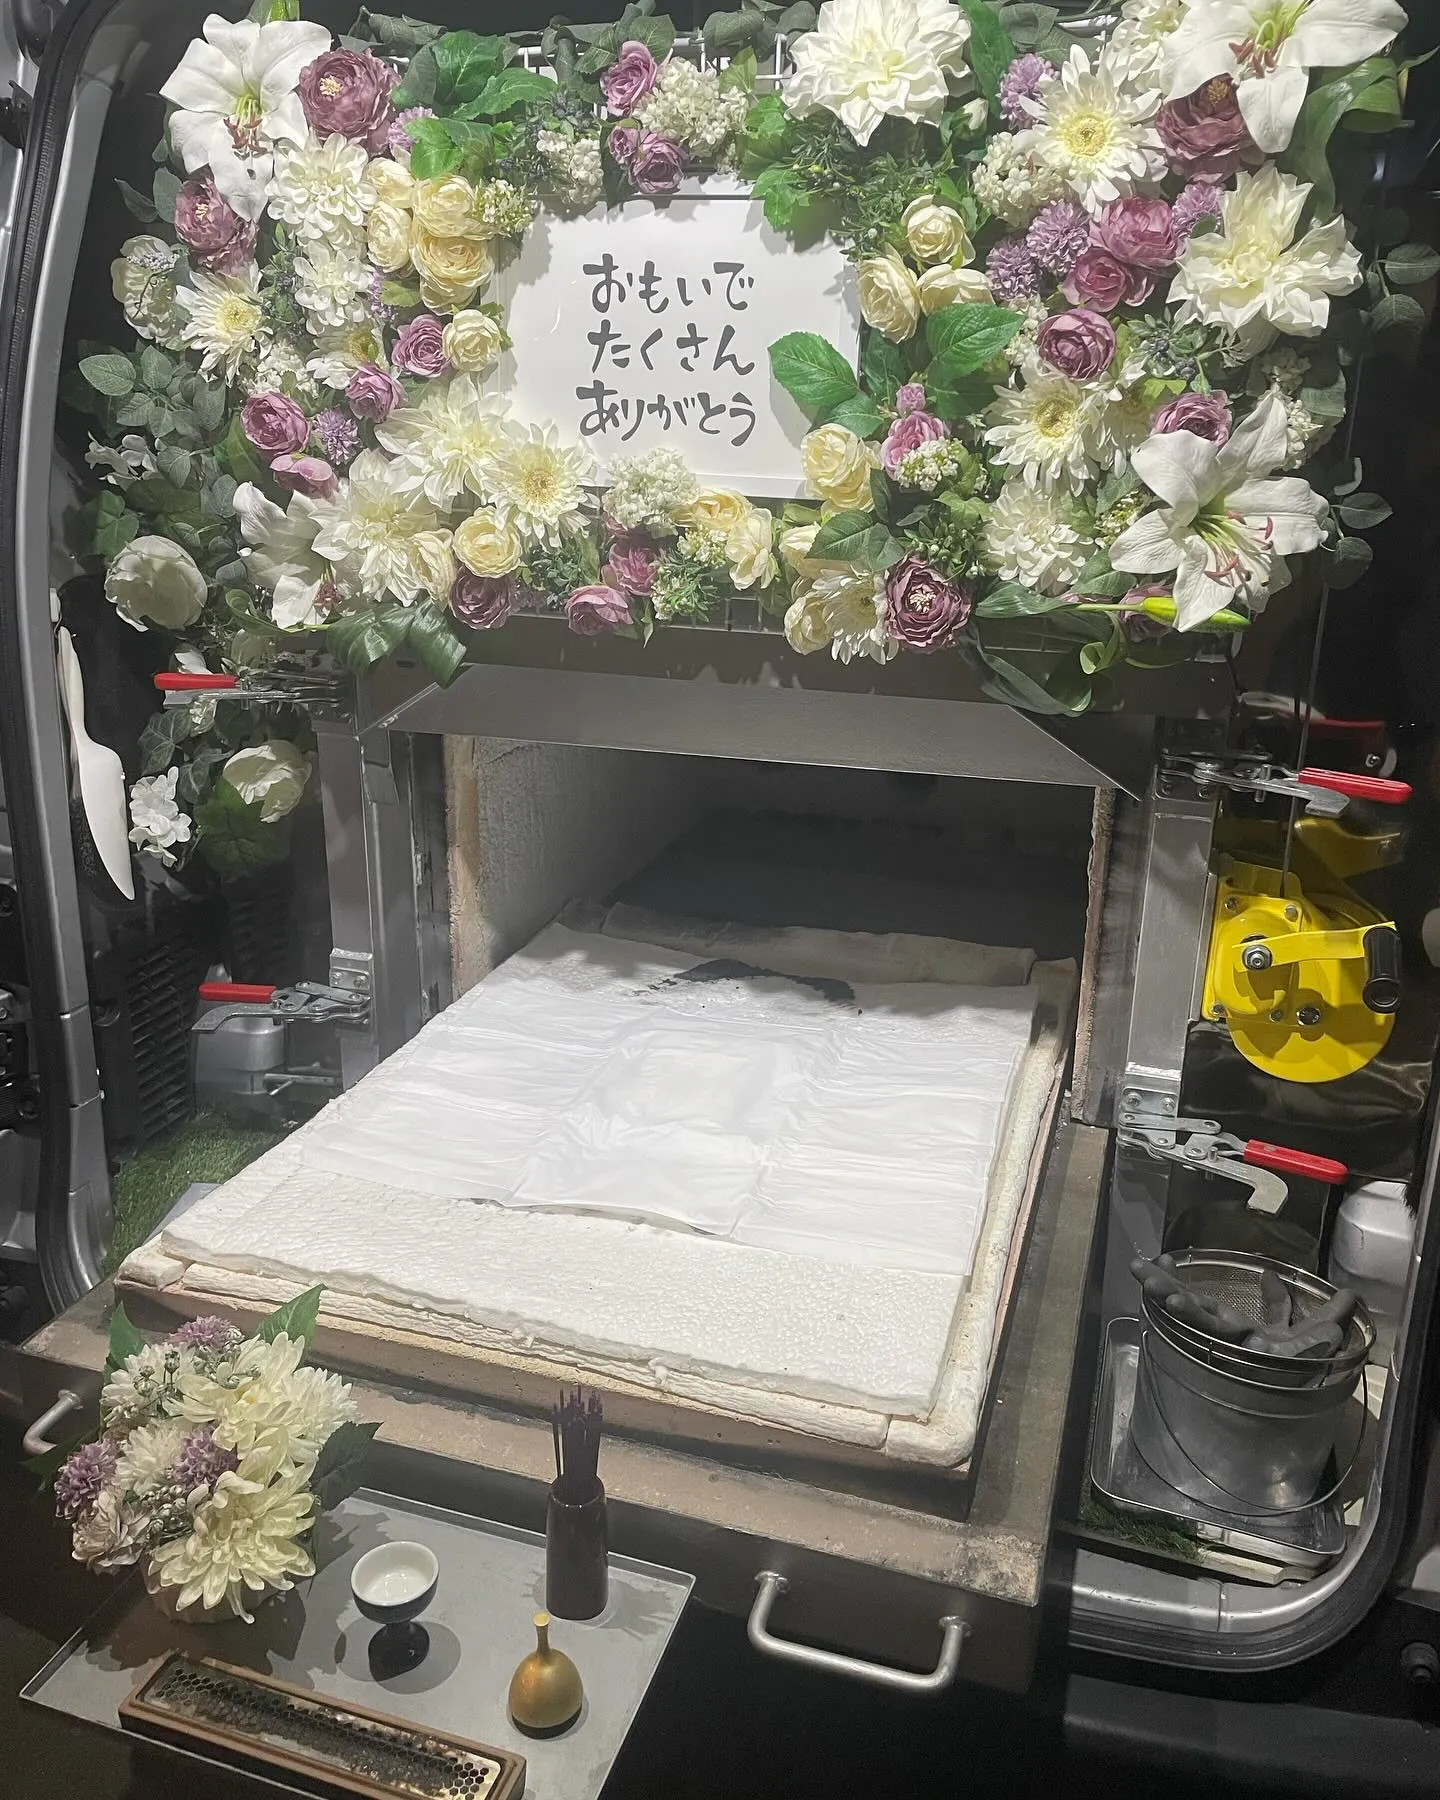 東京都東村山市にてインコちゃんのご火葬に伺いました。